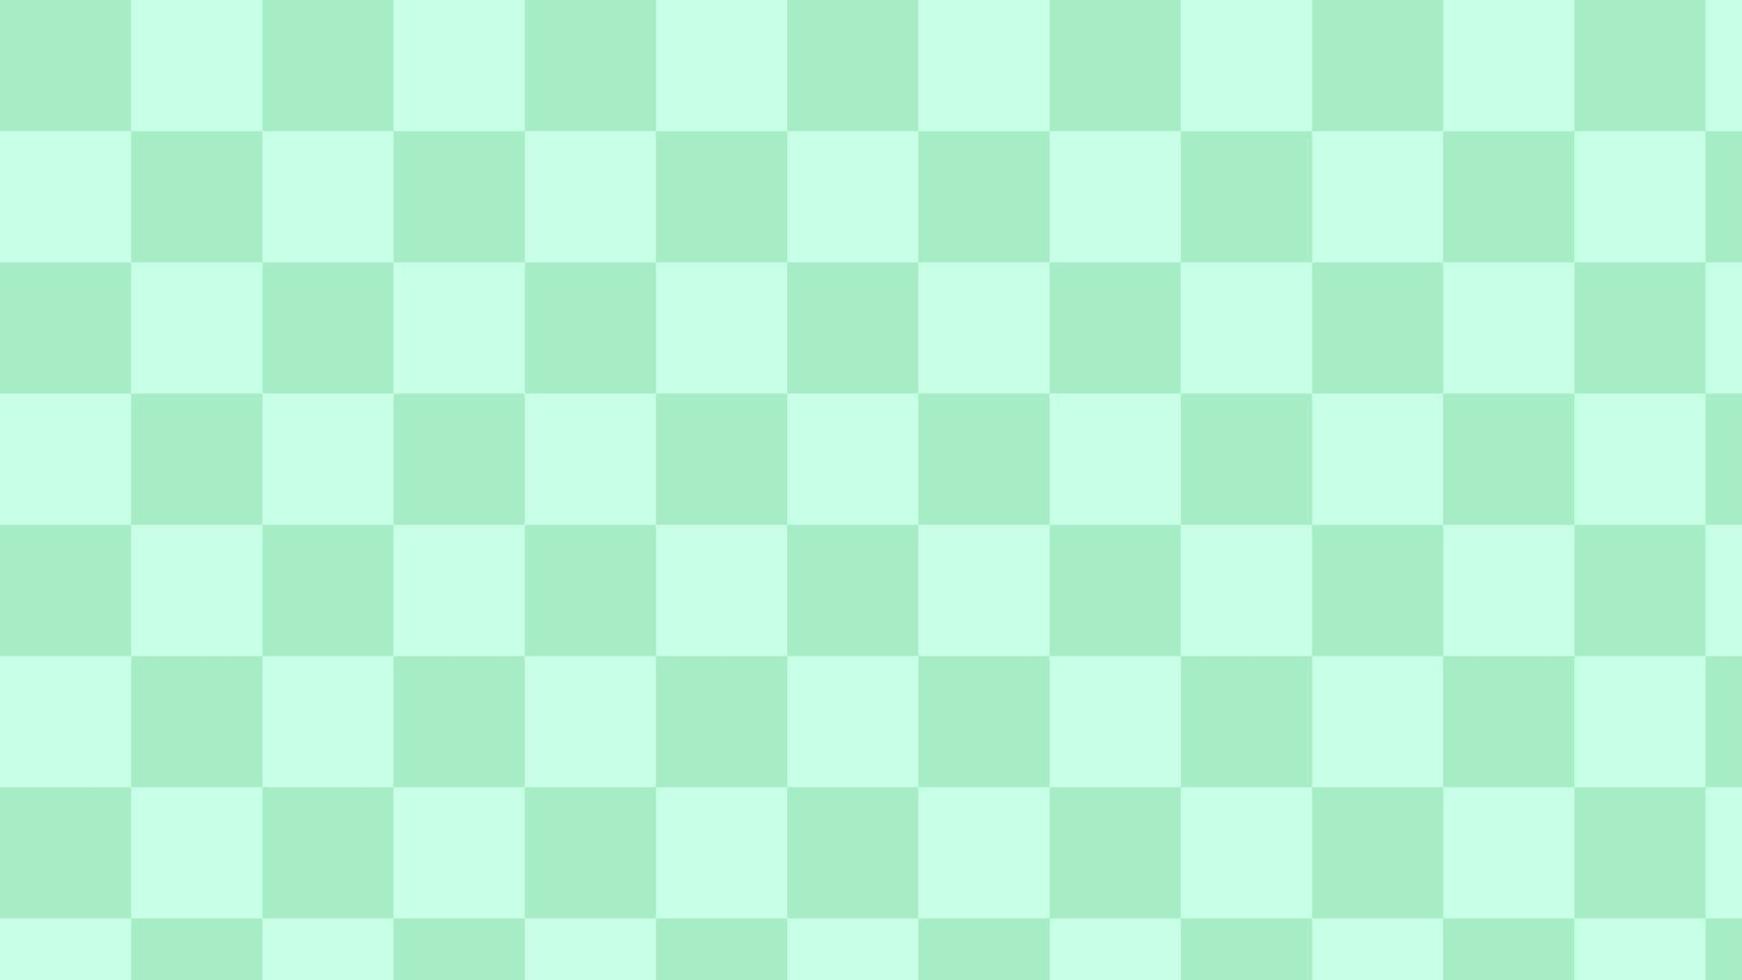 bonitos grandes damas verdes pastel, guingão, xadrez, ilustração de papel de parede de padrão de xadrez estético, perfeito para papel de parede, pano de fundo, cartão postal, plano de fundo para seu projeto vetor